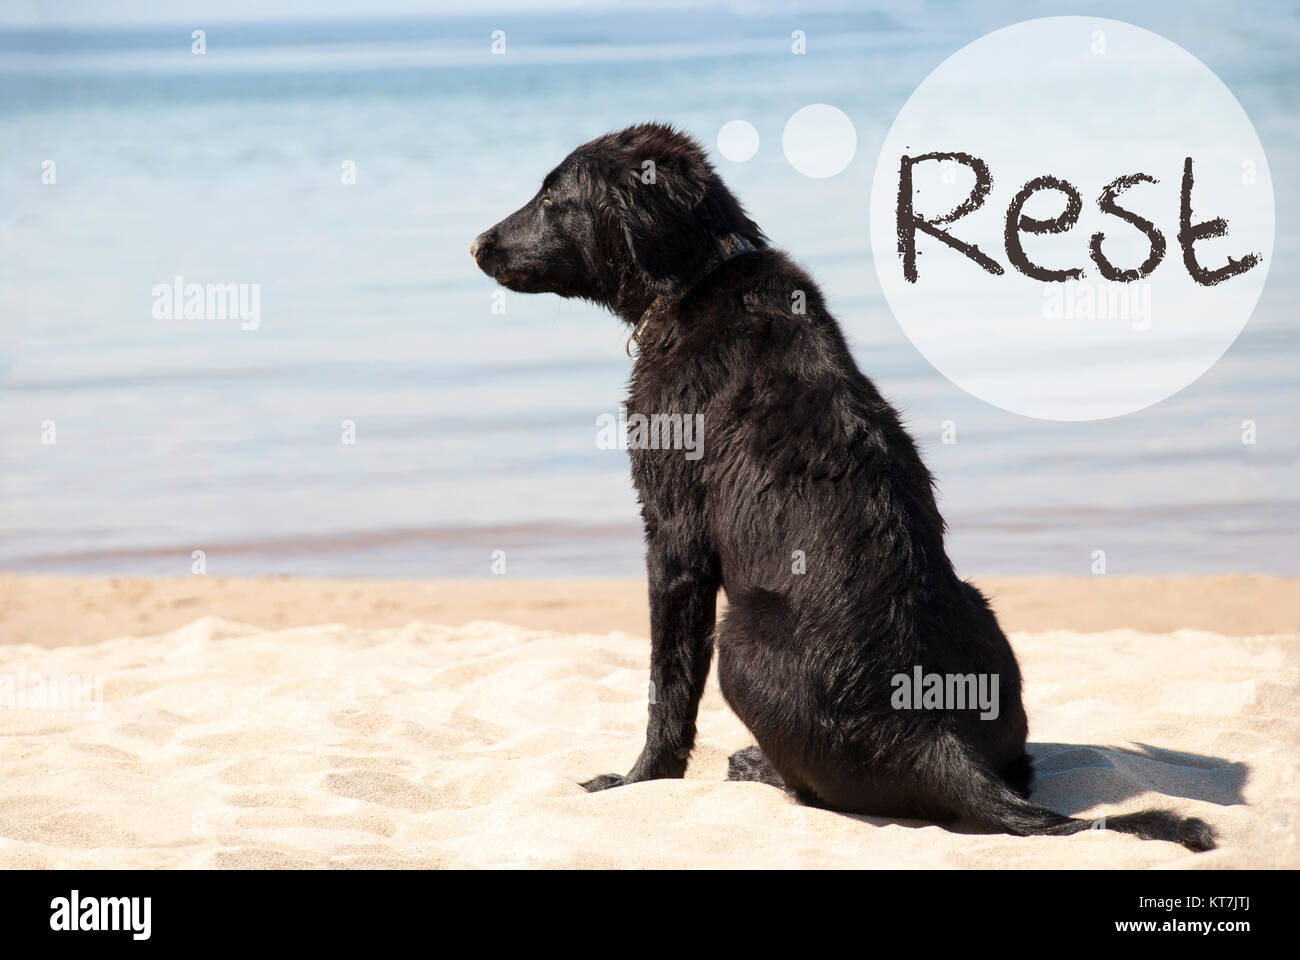 Sprechblase mit englischen Text Rest. Flat Coated Retriever Hund im Sandy Beach. Meer und Wasser im Hintergrund Stockfoto